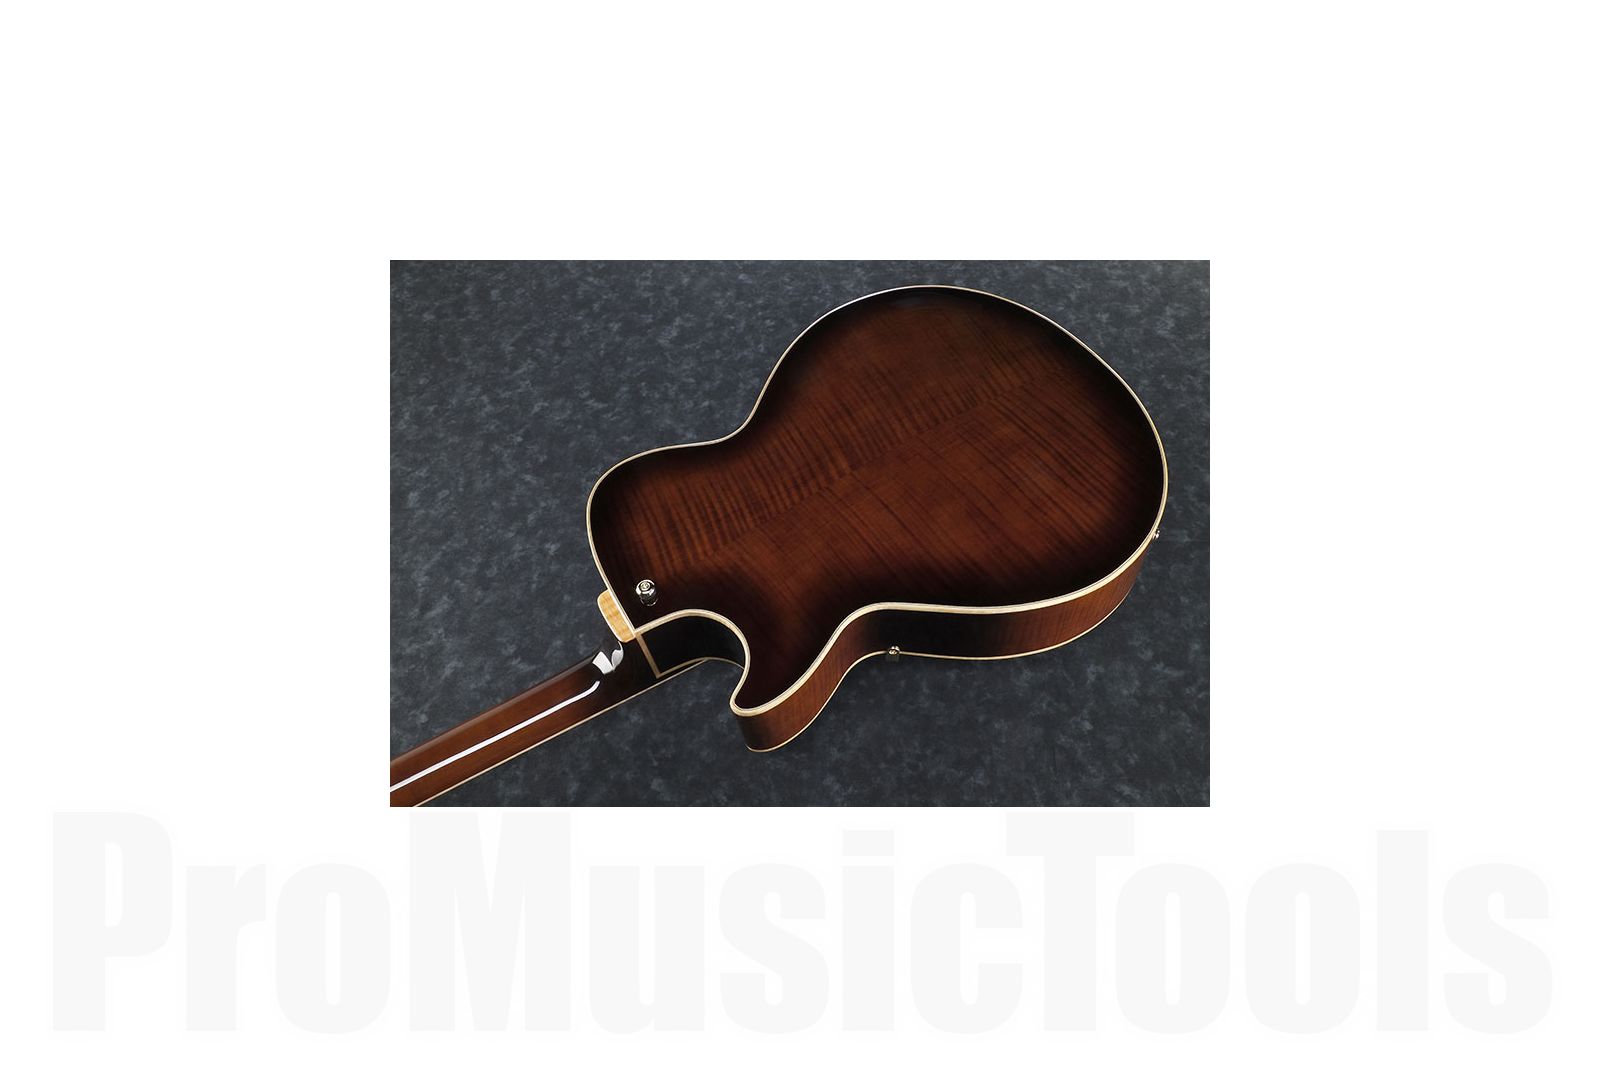 Ibanez SS300 DVS Artstar - Dark Violin Sunburst